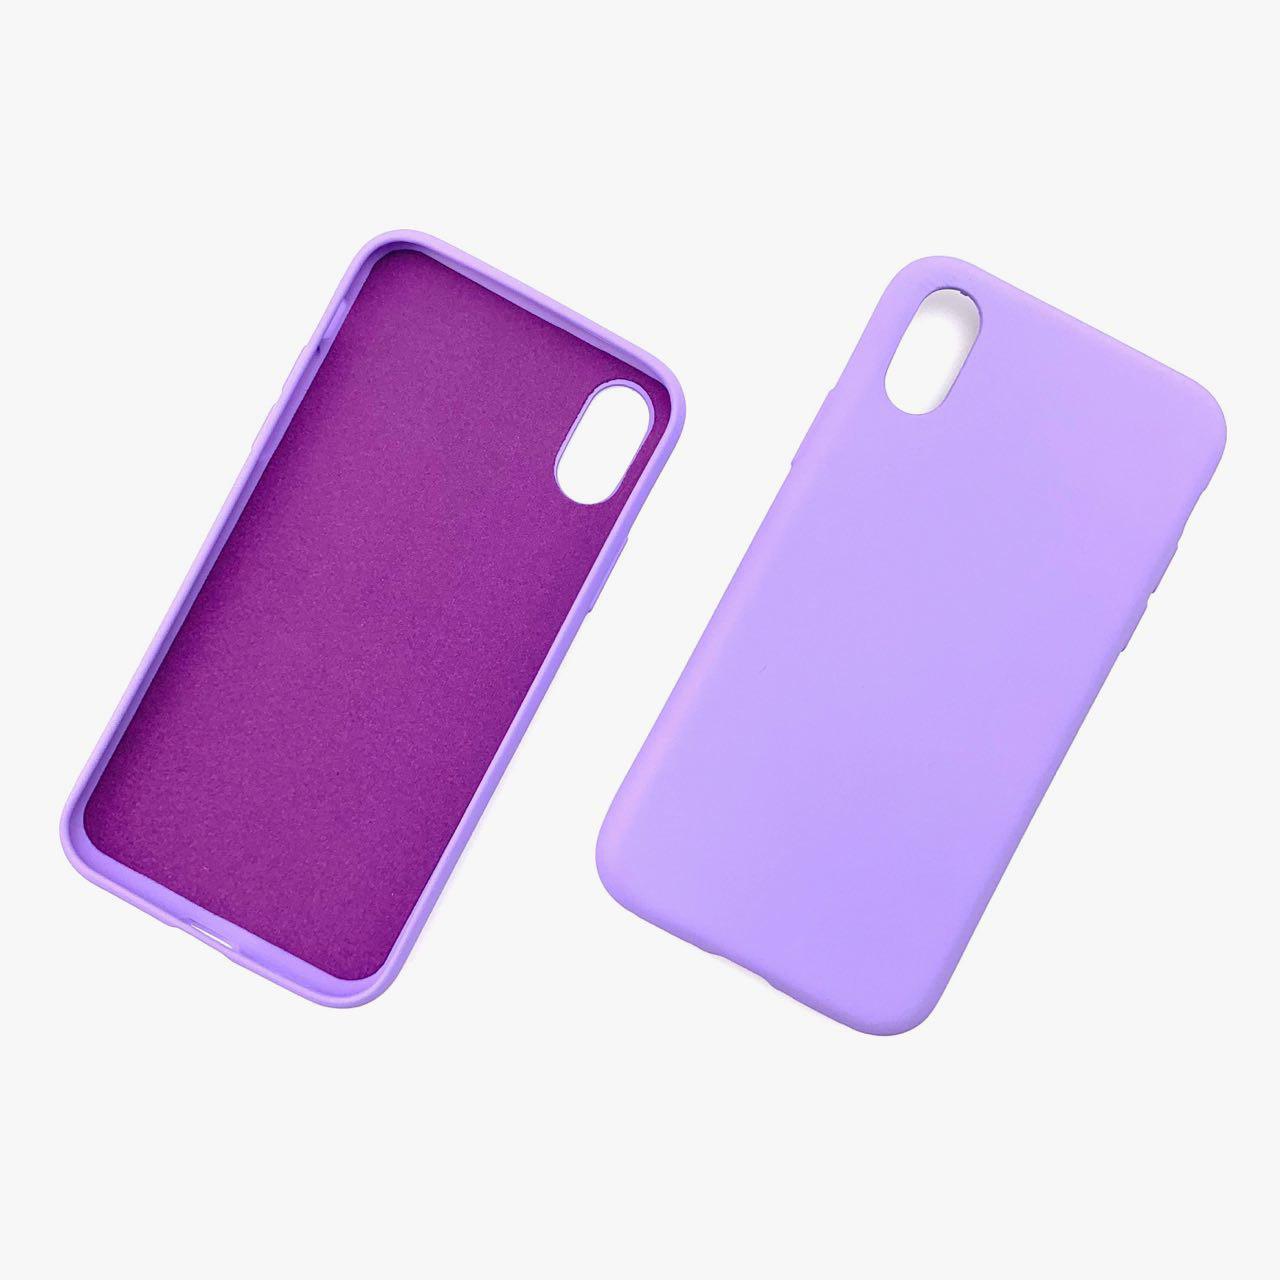 Чехол накладка для APPLE iPhone X, XS, силикон, цвет фиолетовый.